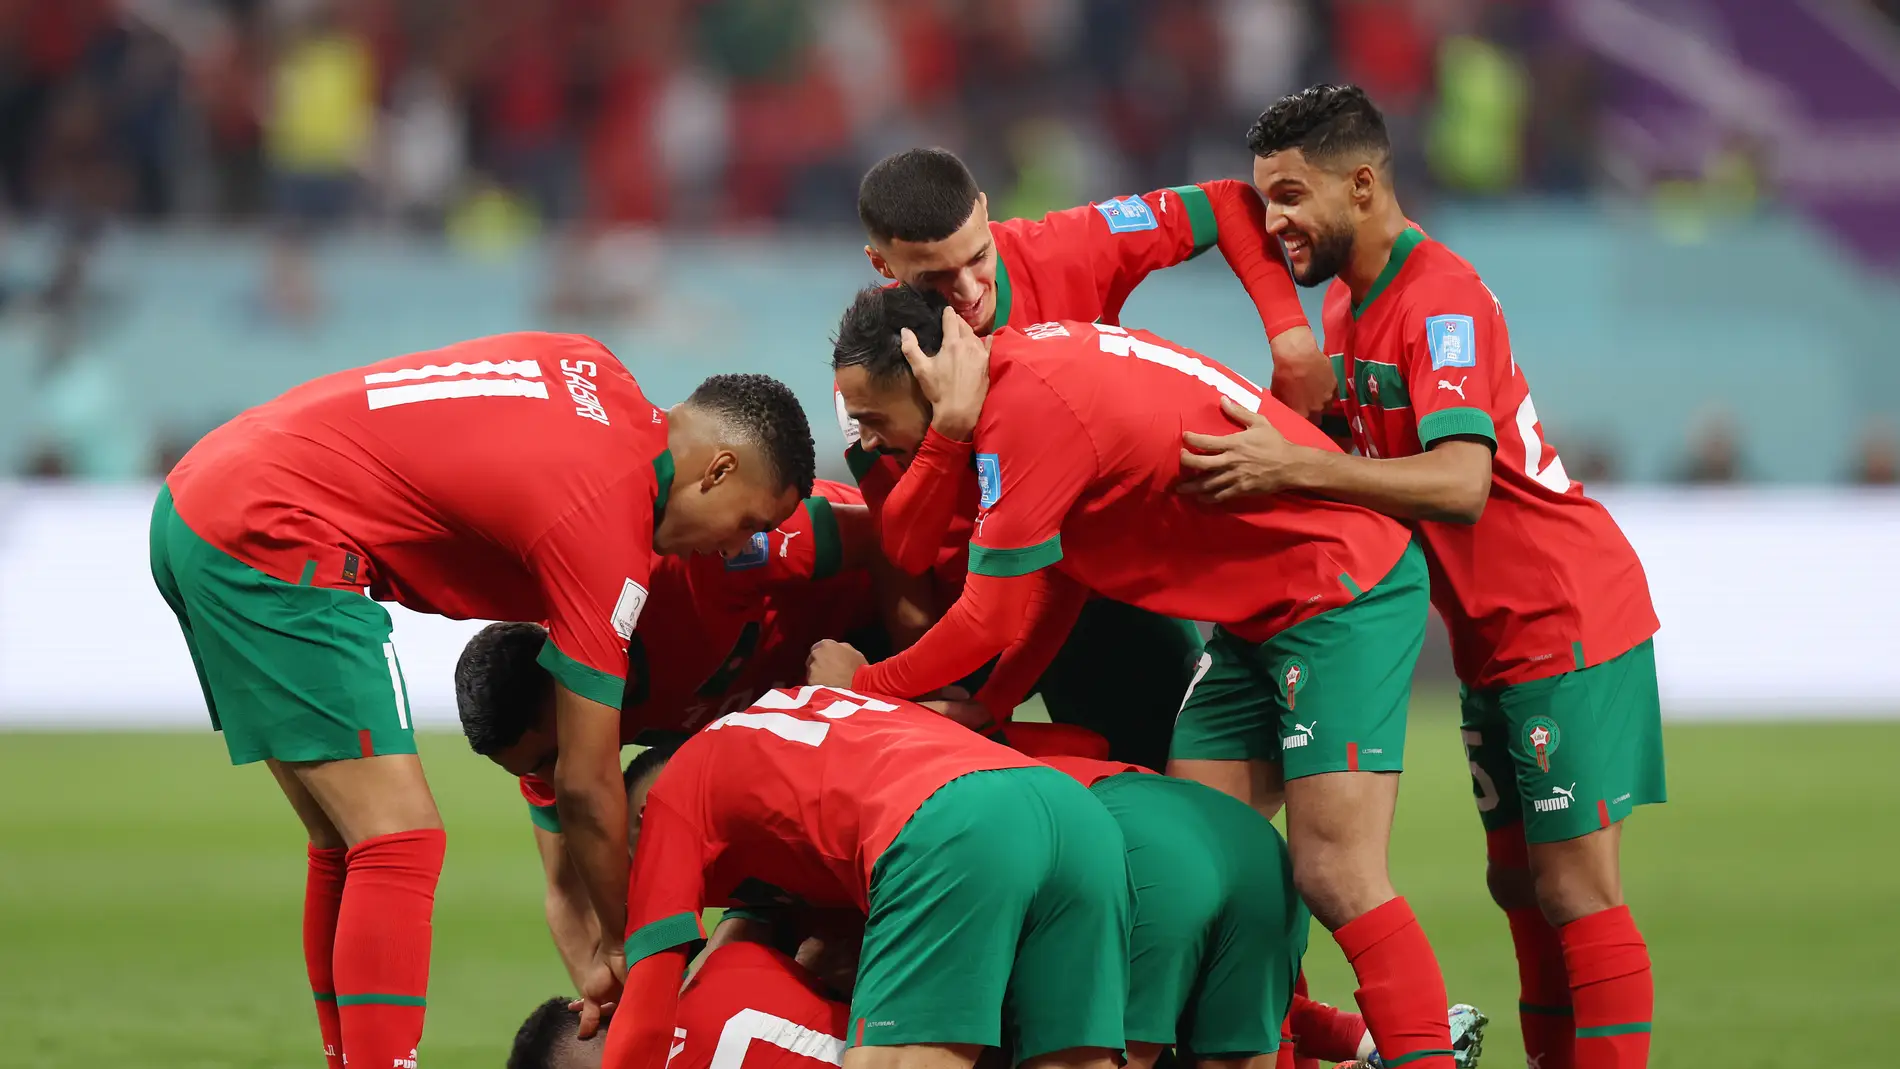 Los mejores jugadores de Marruecos, la sorpresa del Mundial 